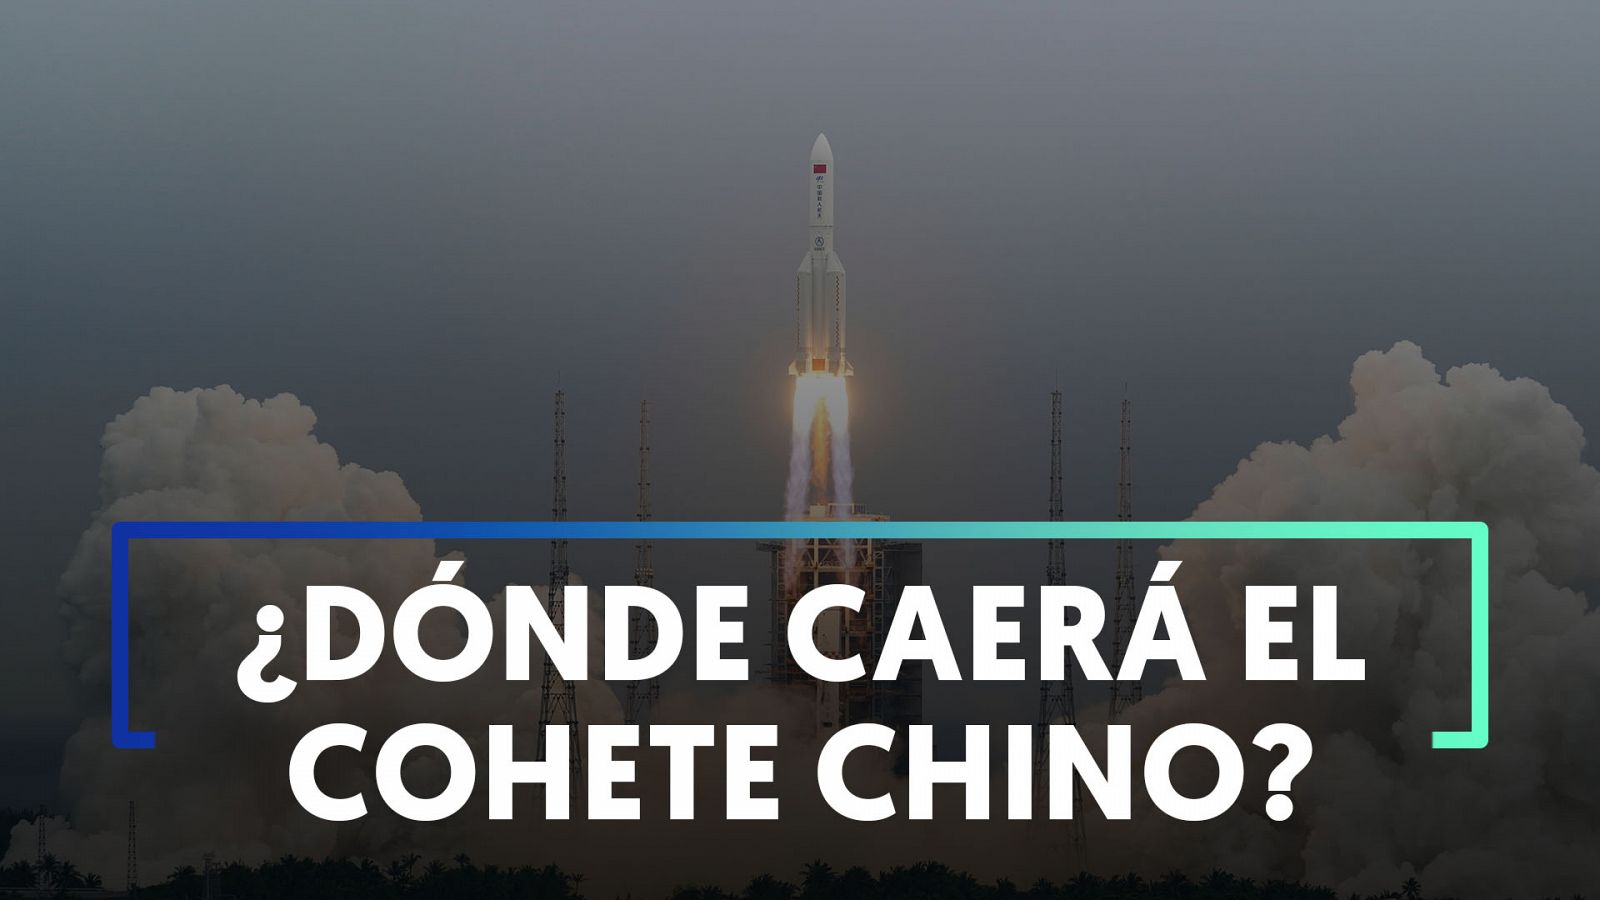 ¿Dónde caerán los restos del cohete chino que viaja sin control?